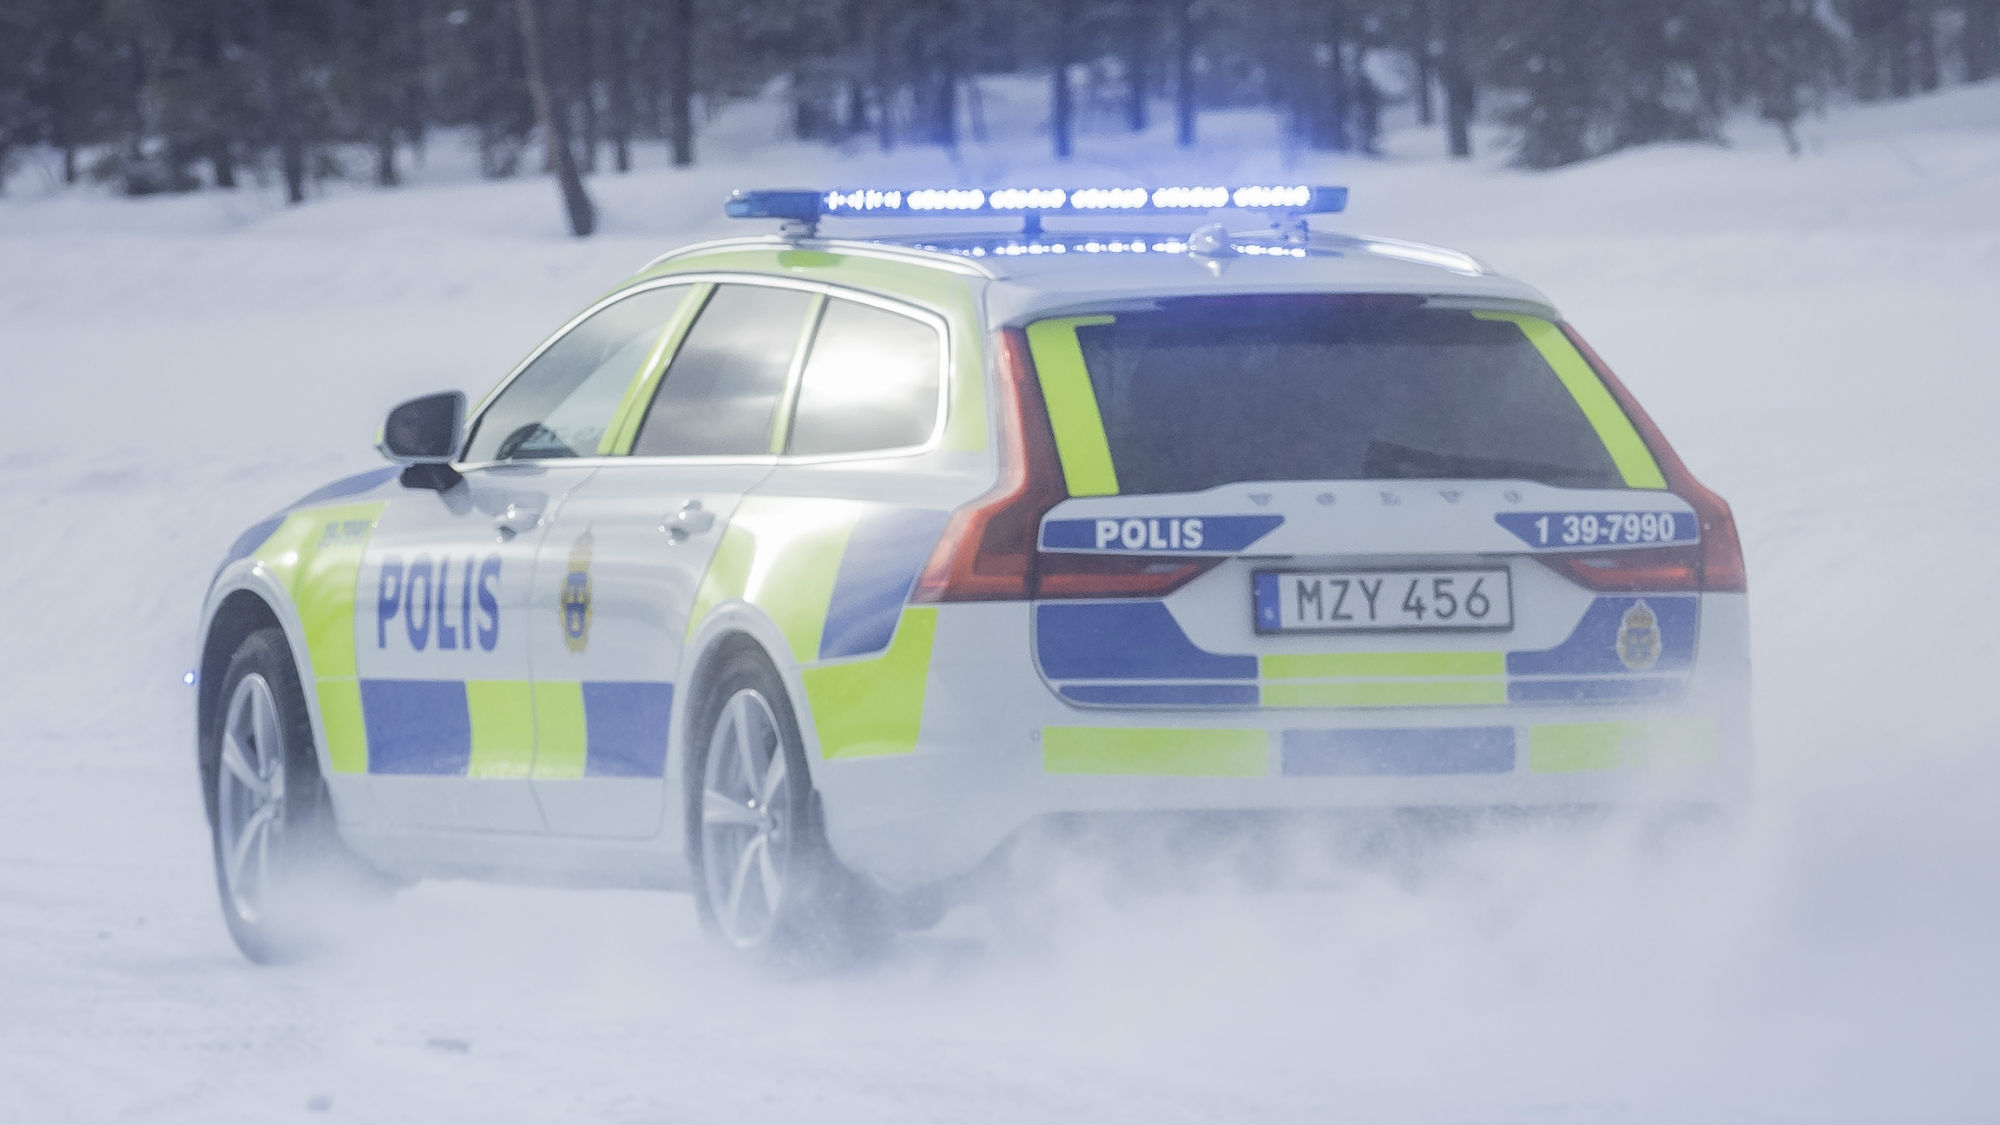 Volvo V90 police car